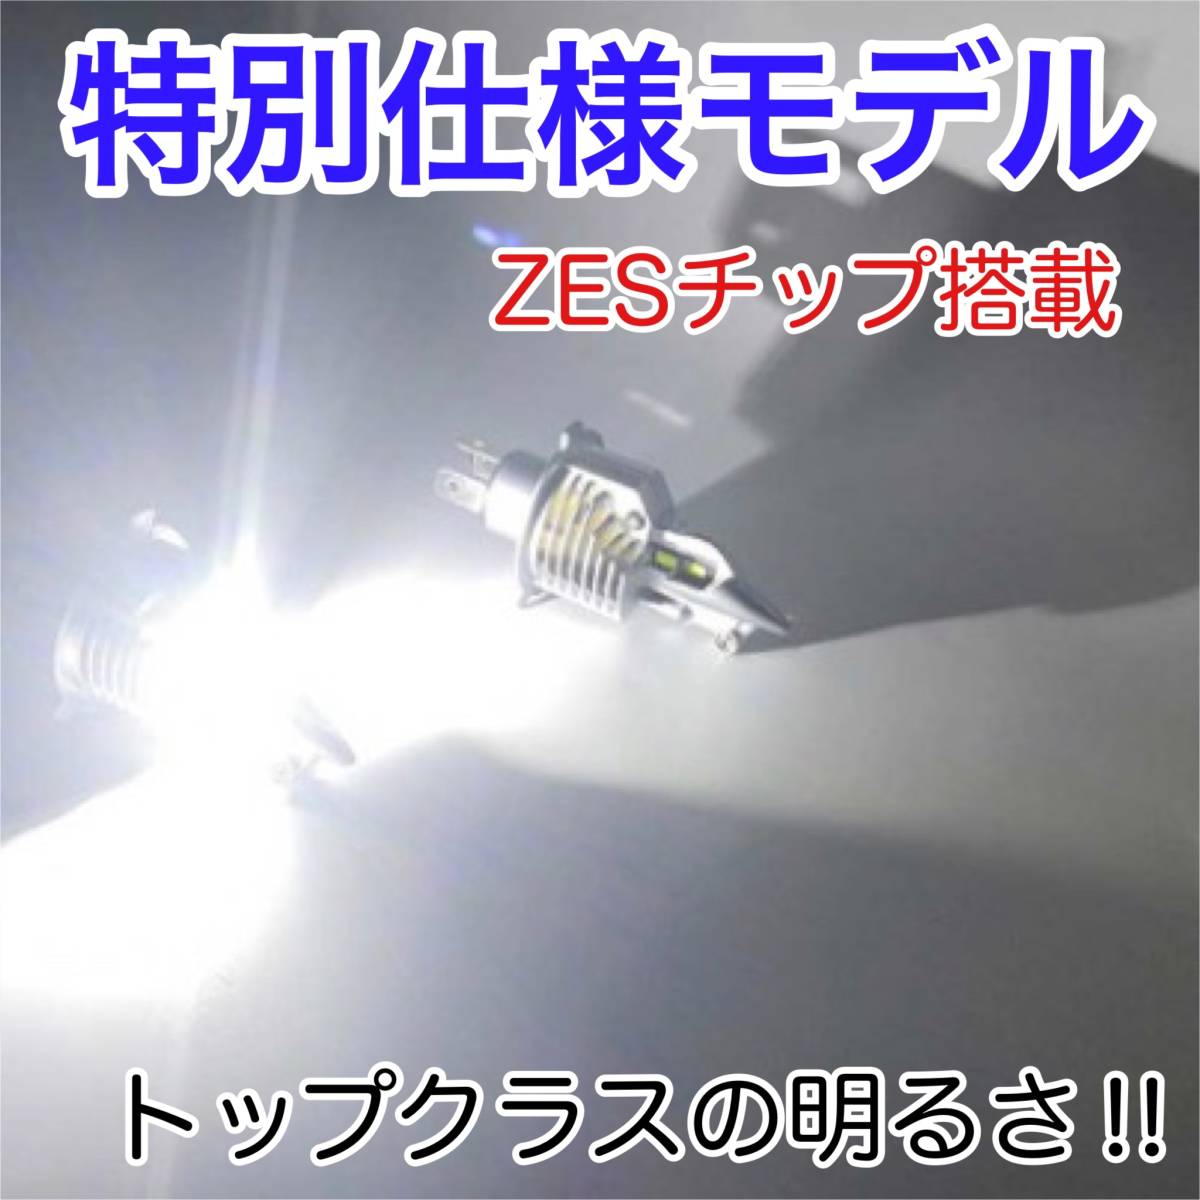 KAWASAKI バルカン1500クラシックツアラーVNT50G LEDヘッドライト H4 Hi/Lo バルブ バイク用 1灯 S25 テールランプ2個 ホワイト 交換用